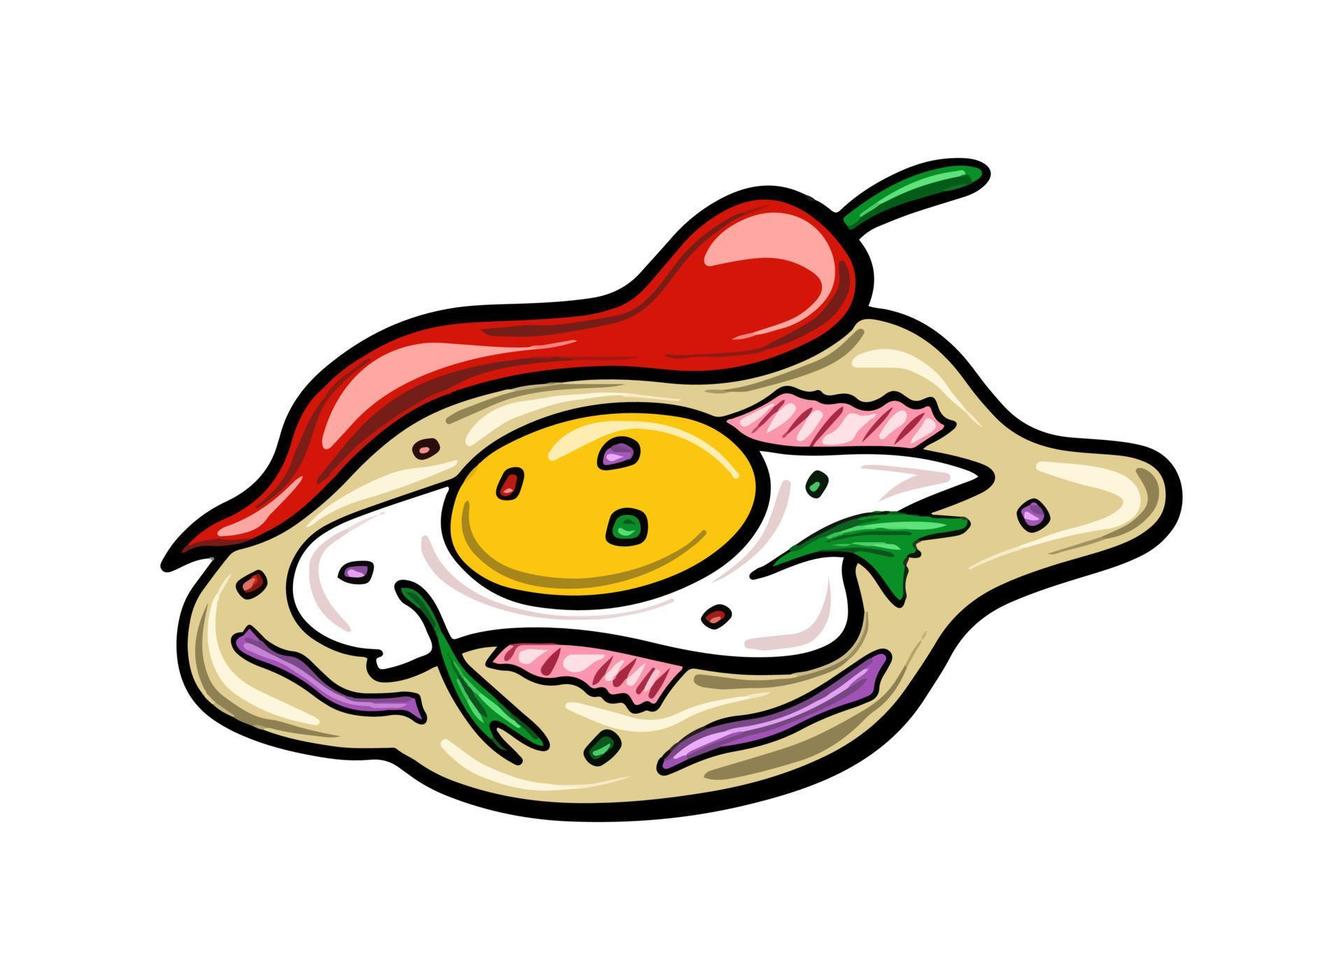 Burrito de comida tradicional mexicana vectorial con huevos y chiles dibujados en un estilo de caricatura plana. vector